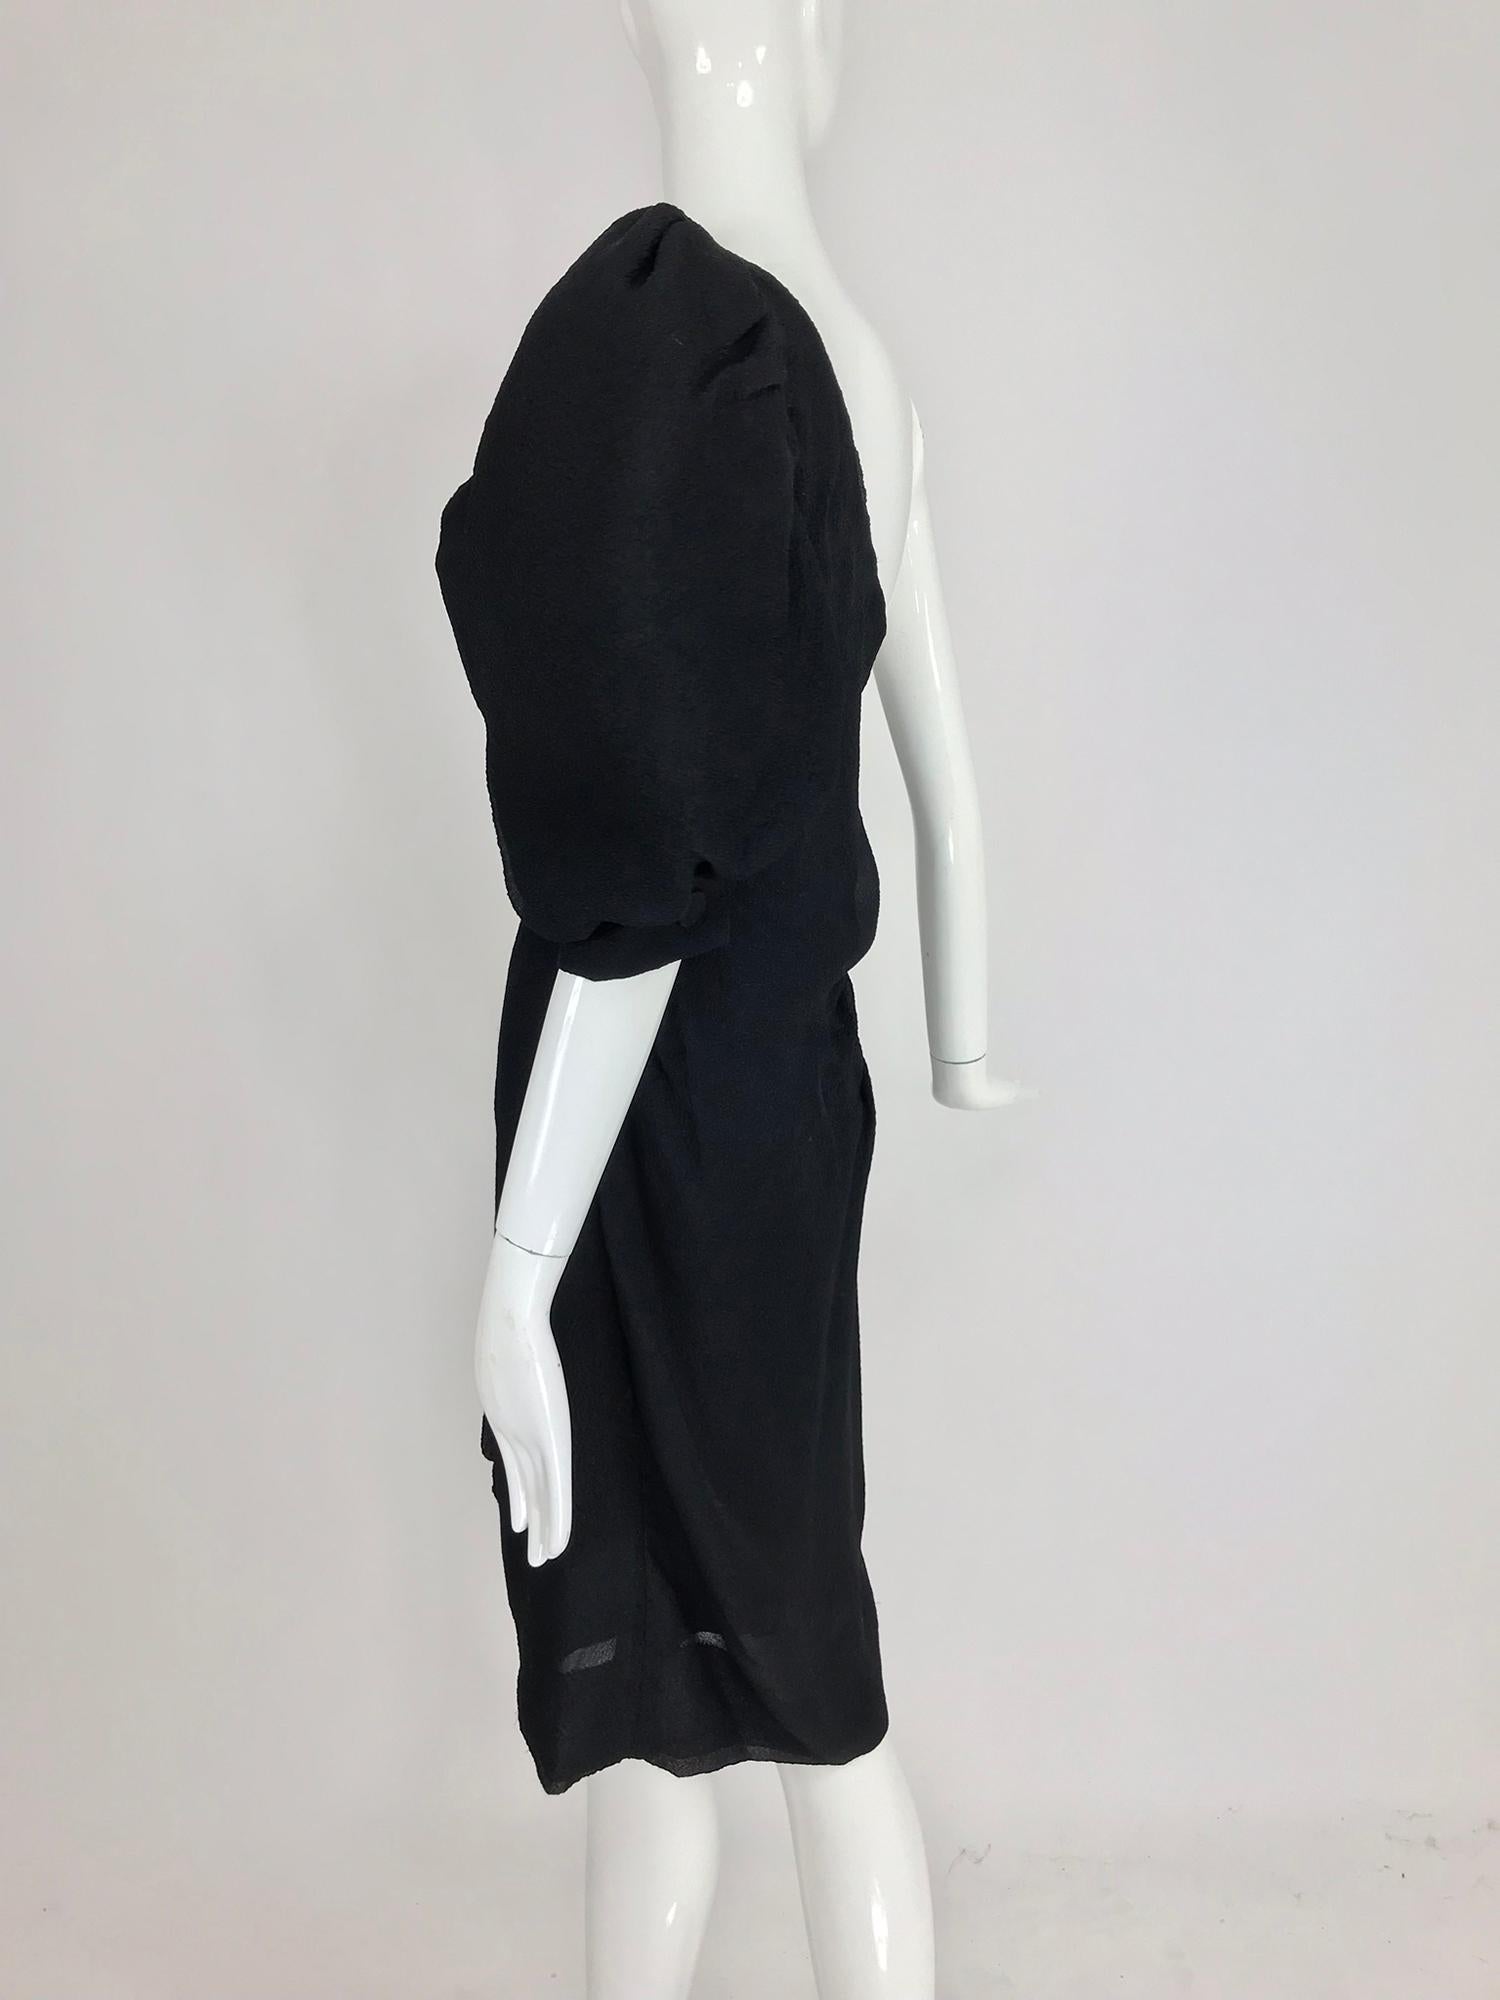 Women's Givenchy black matelassé silk one shoulder cocktail dress 1990s